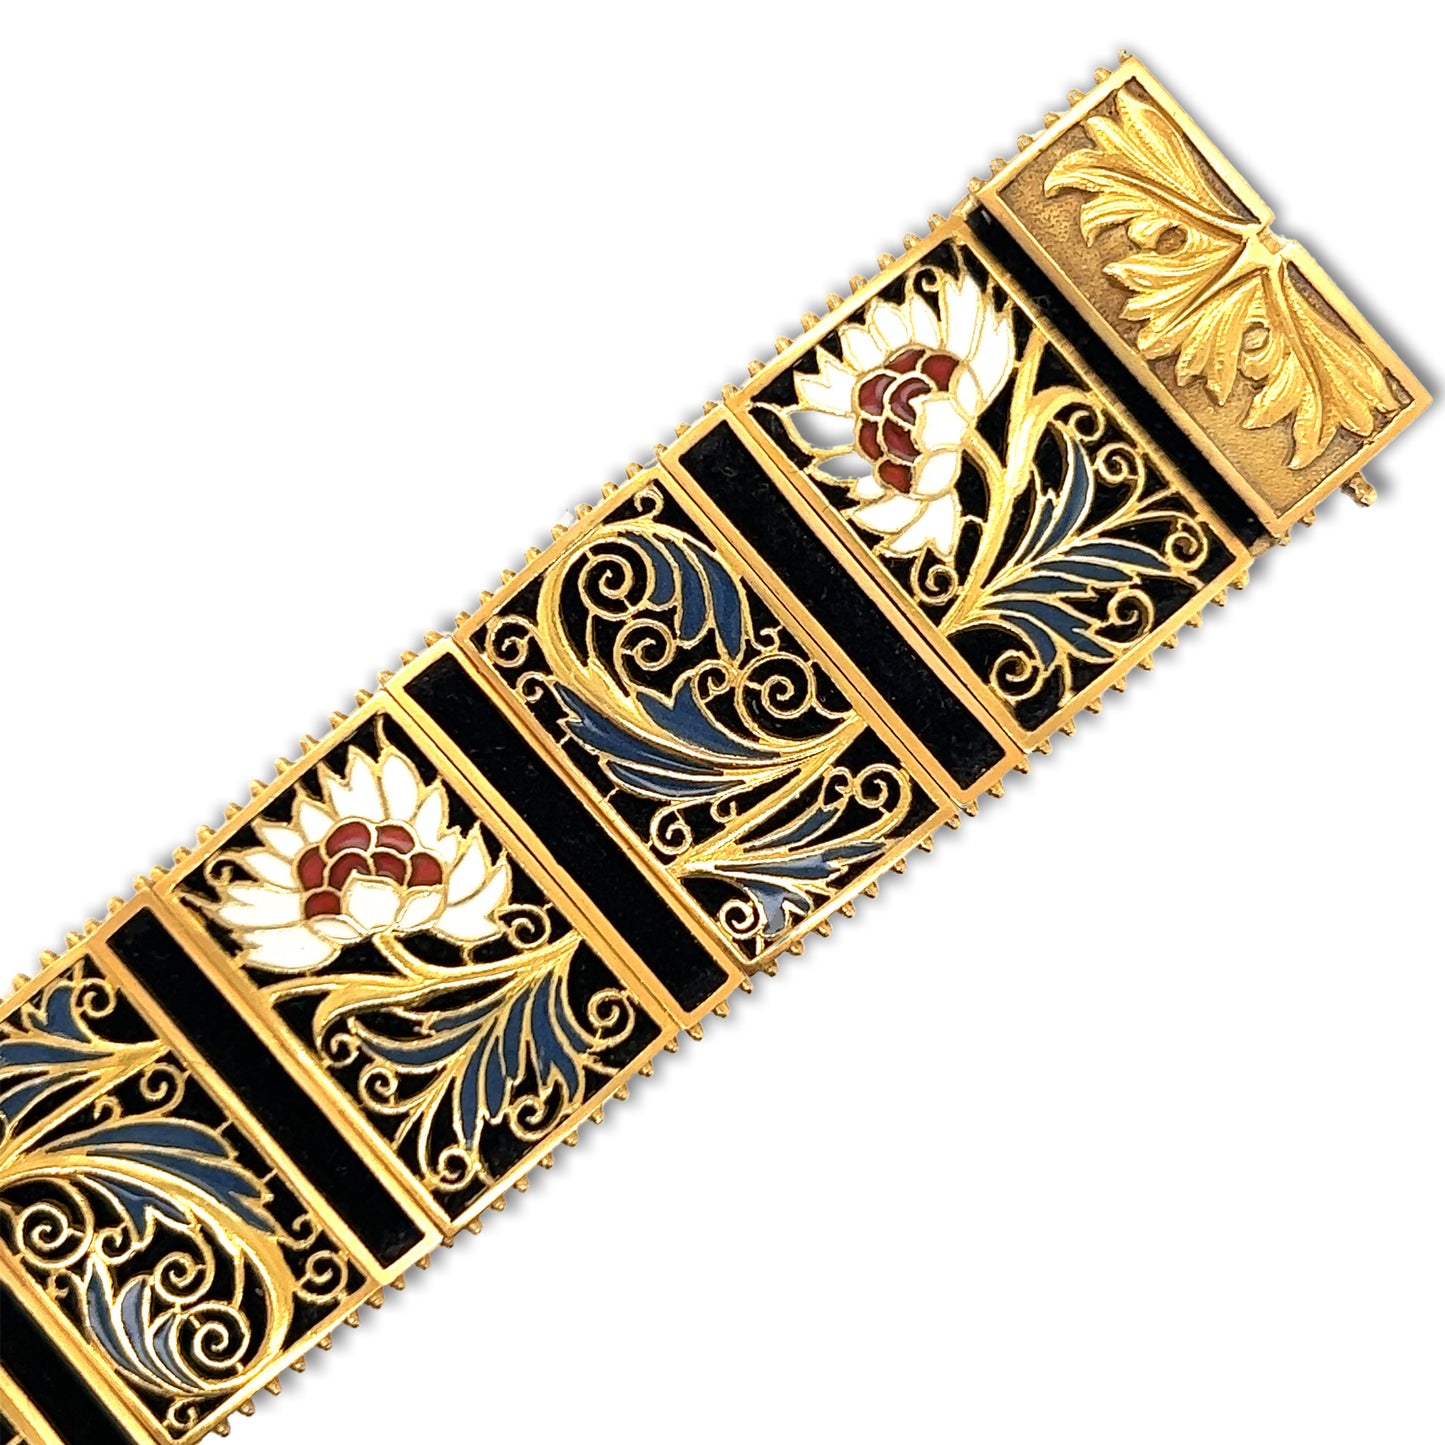 Masriera Art Nouveau 18KT Yellow Gold Enamel Plique-a-jour Bracelet close-up details